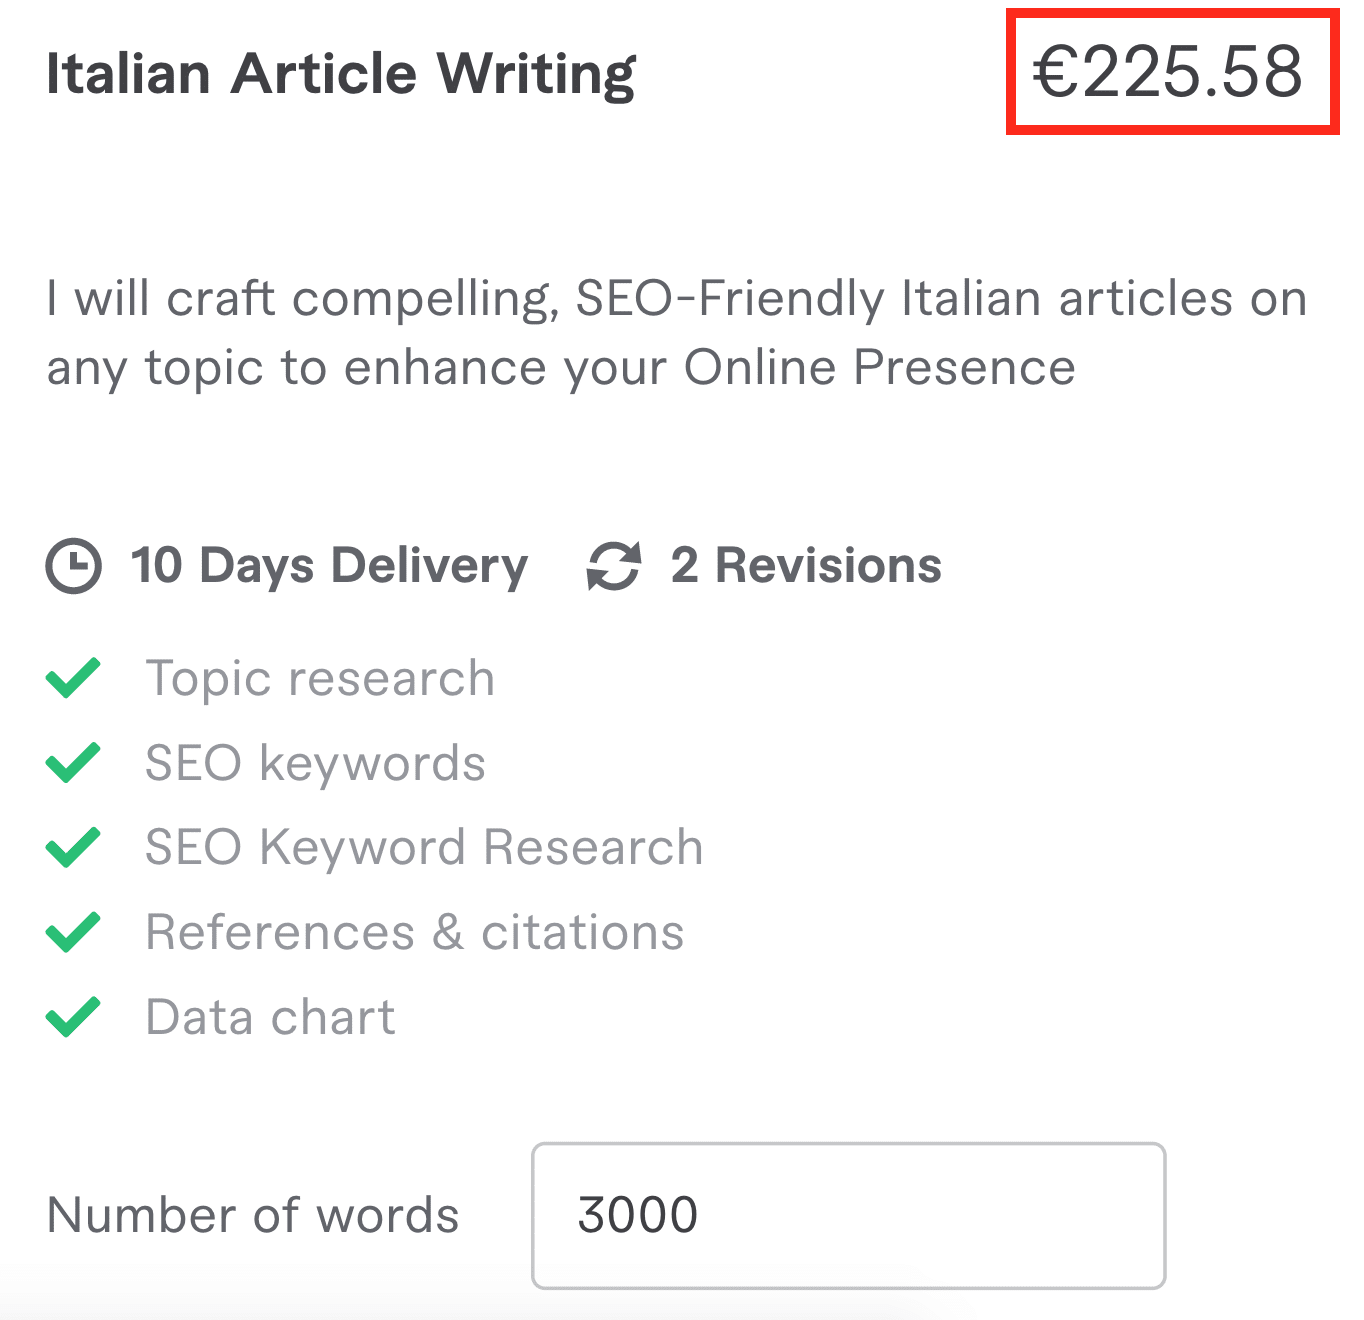 Un articolo per un blog da 3000 parole può costare oltre 200€